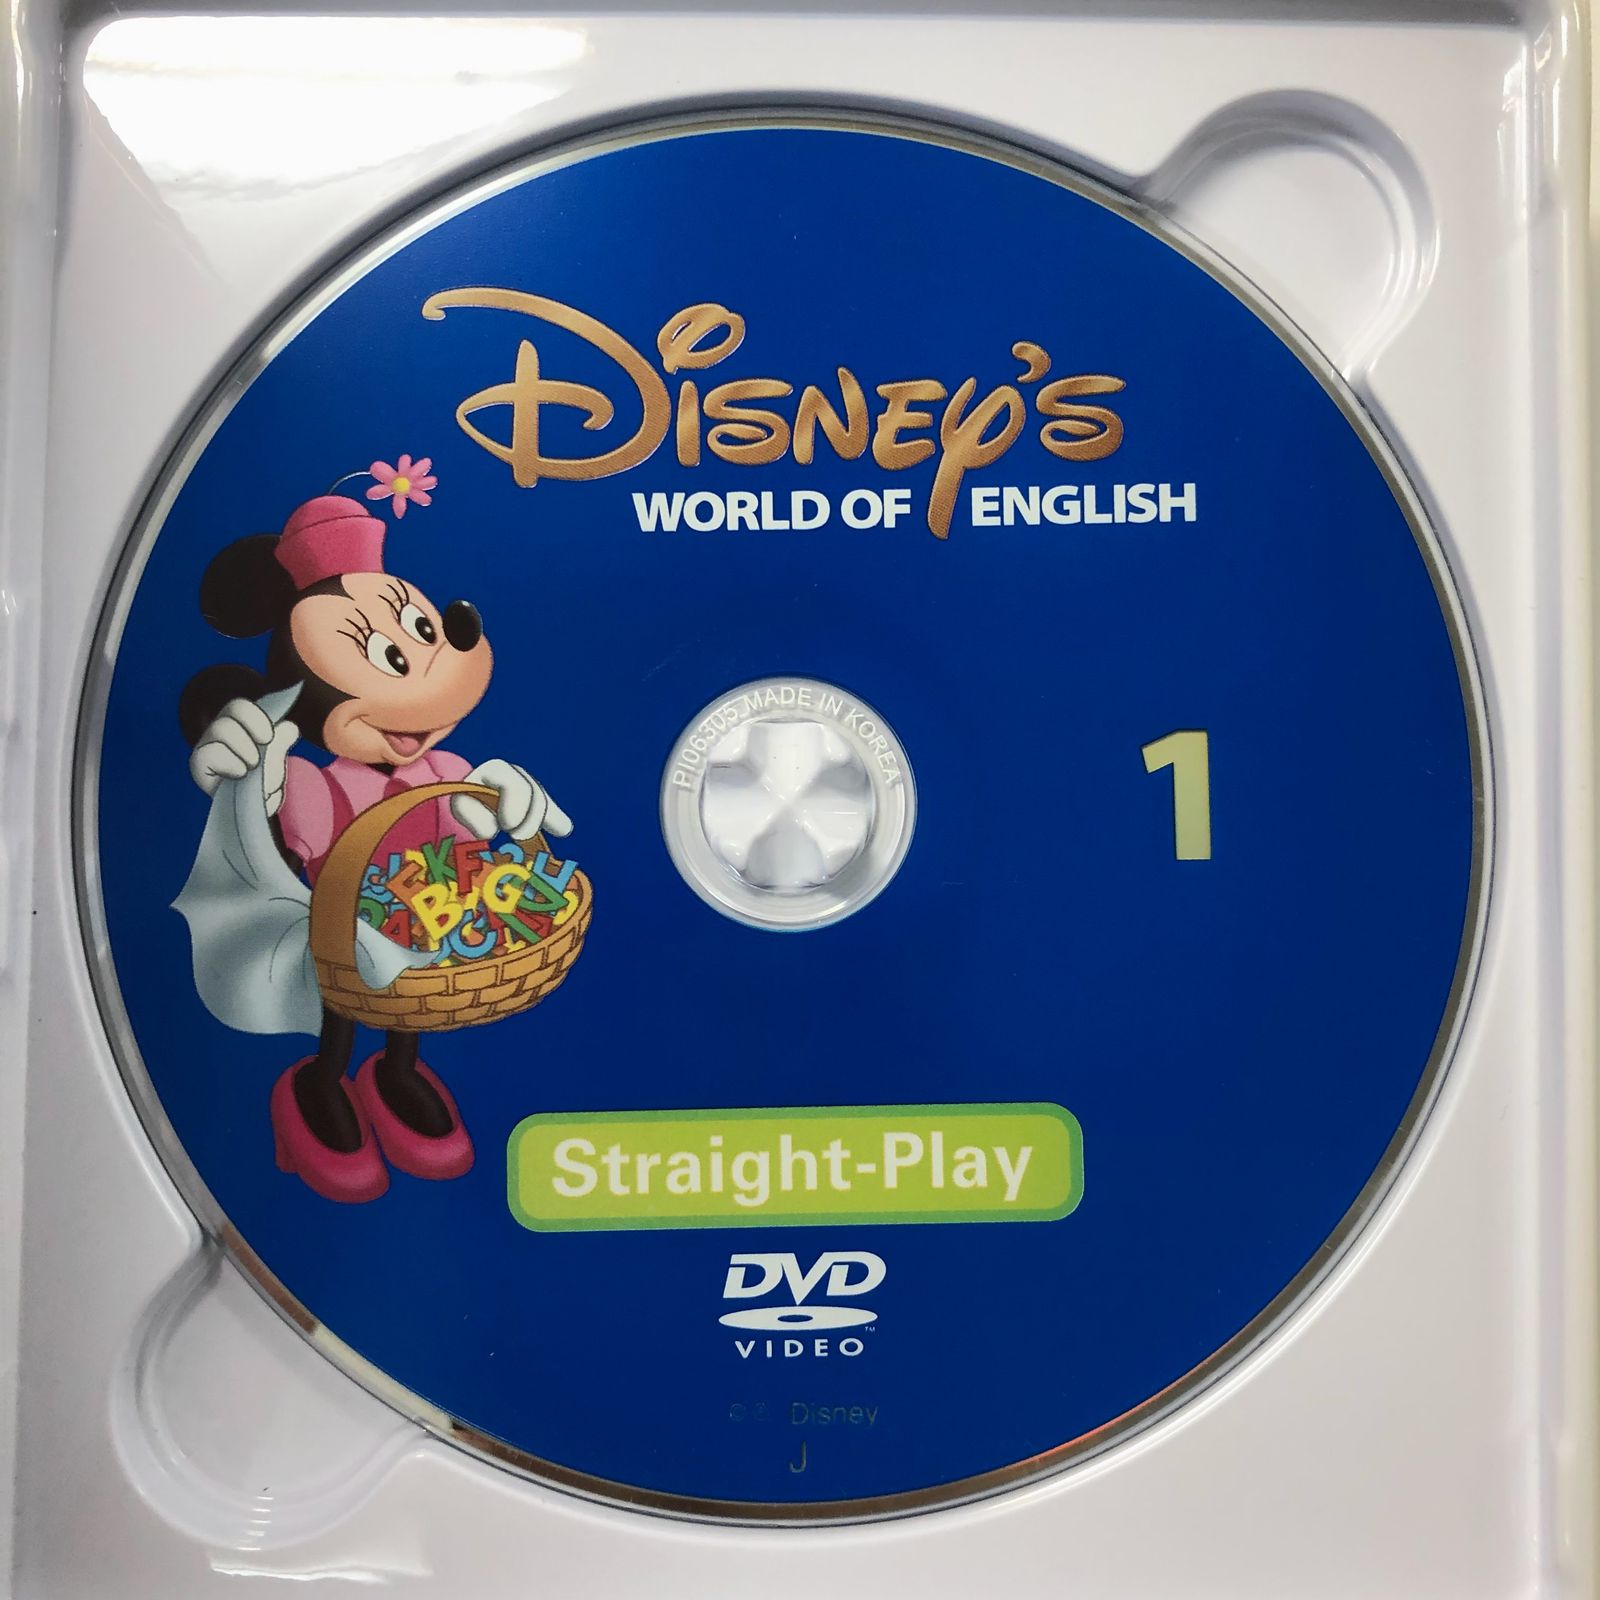 ディズニー英語システム ストレートプレイ DVD 新子役 字幕有 2017年 d 